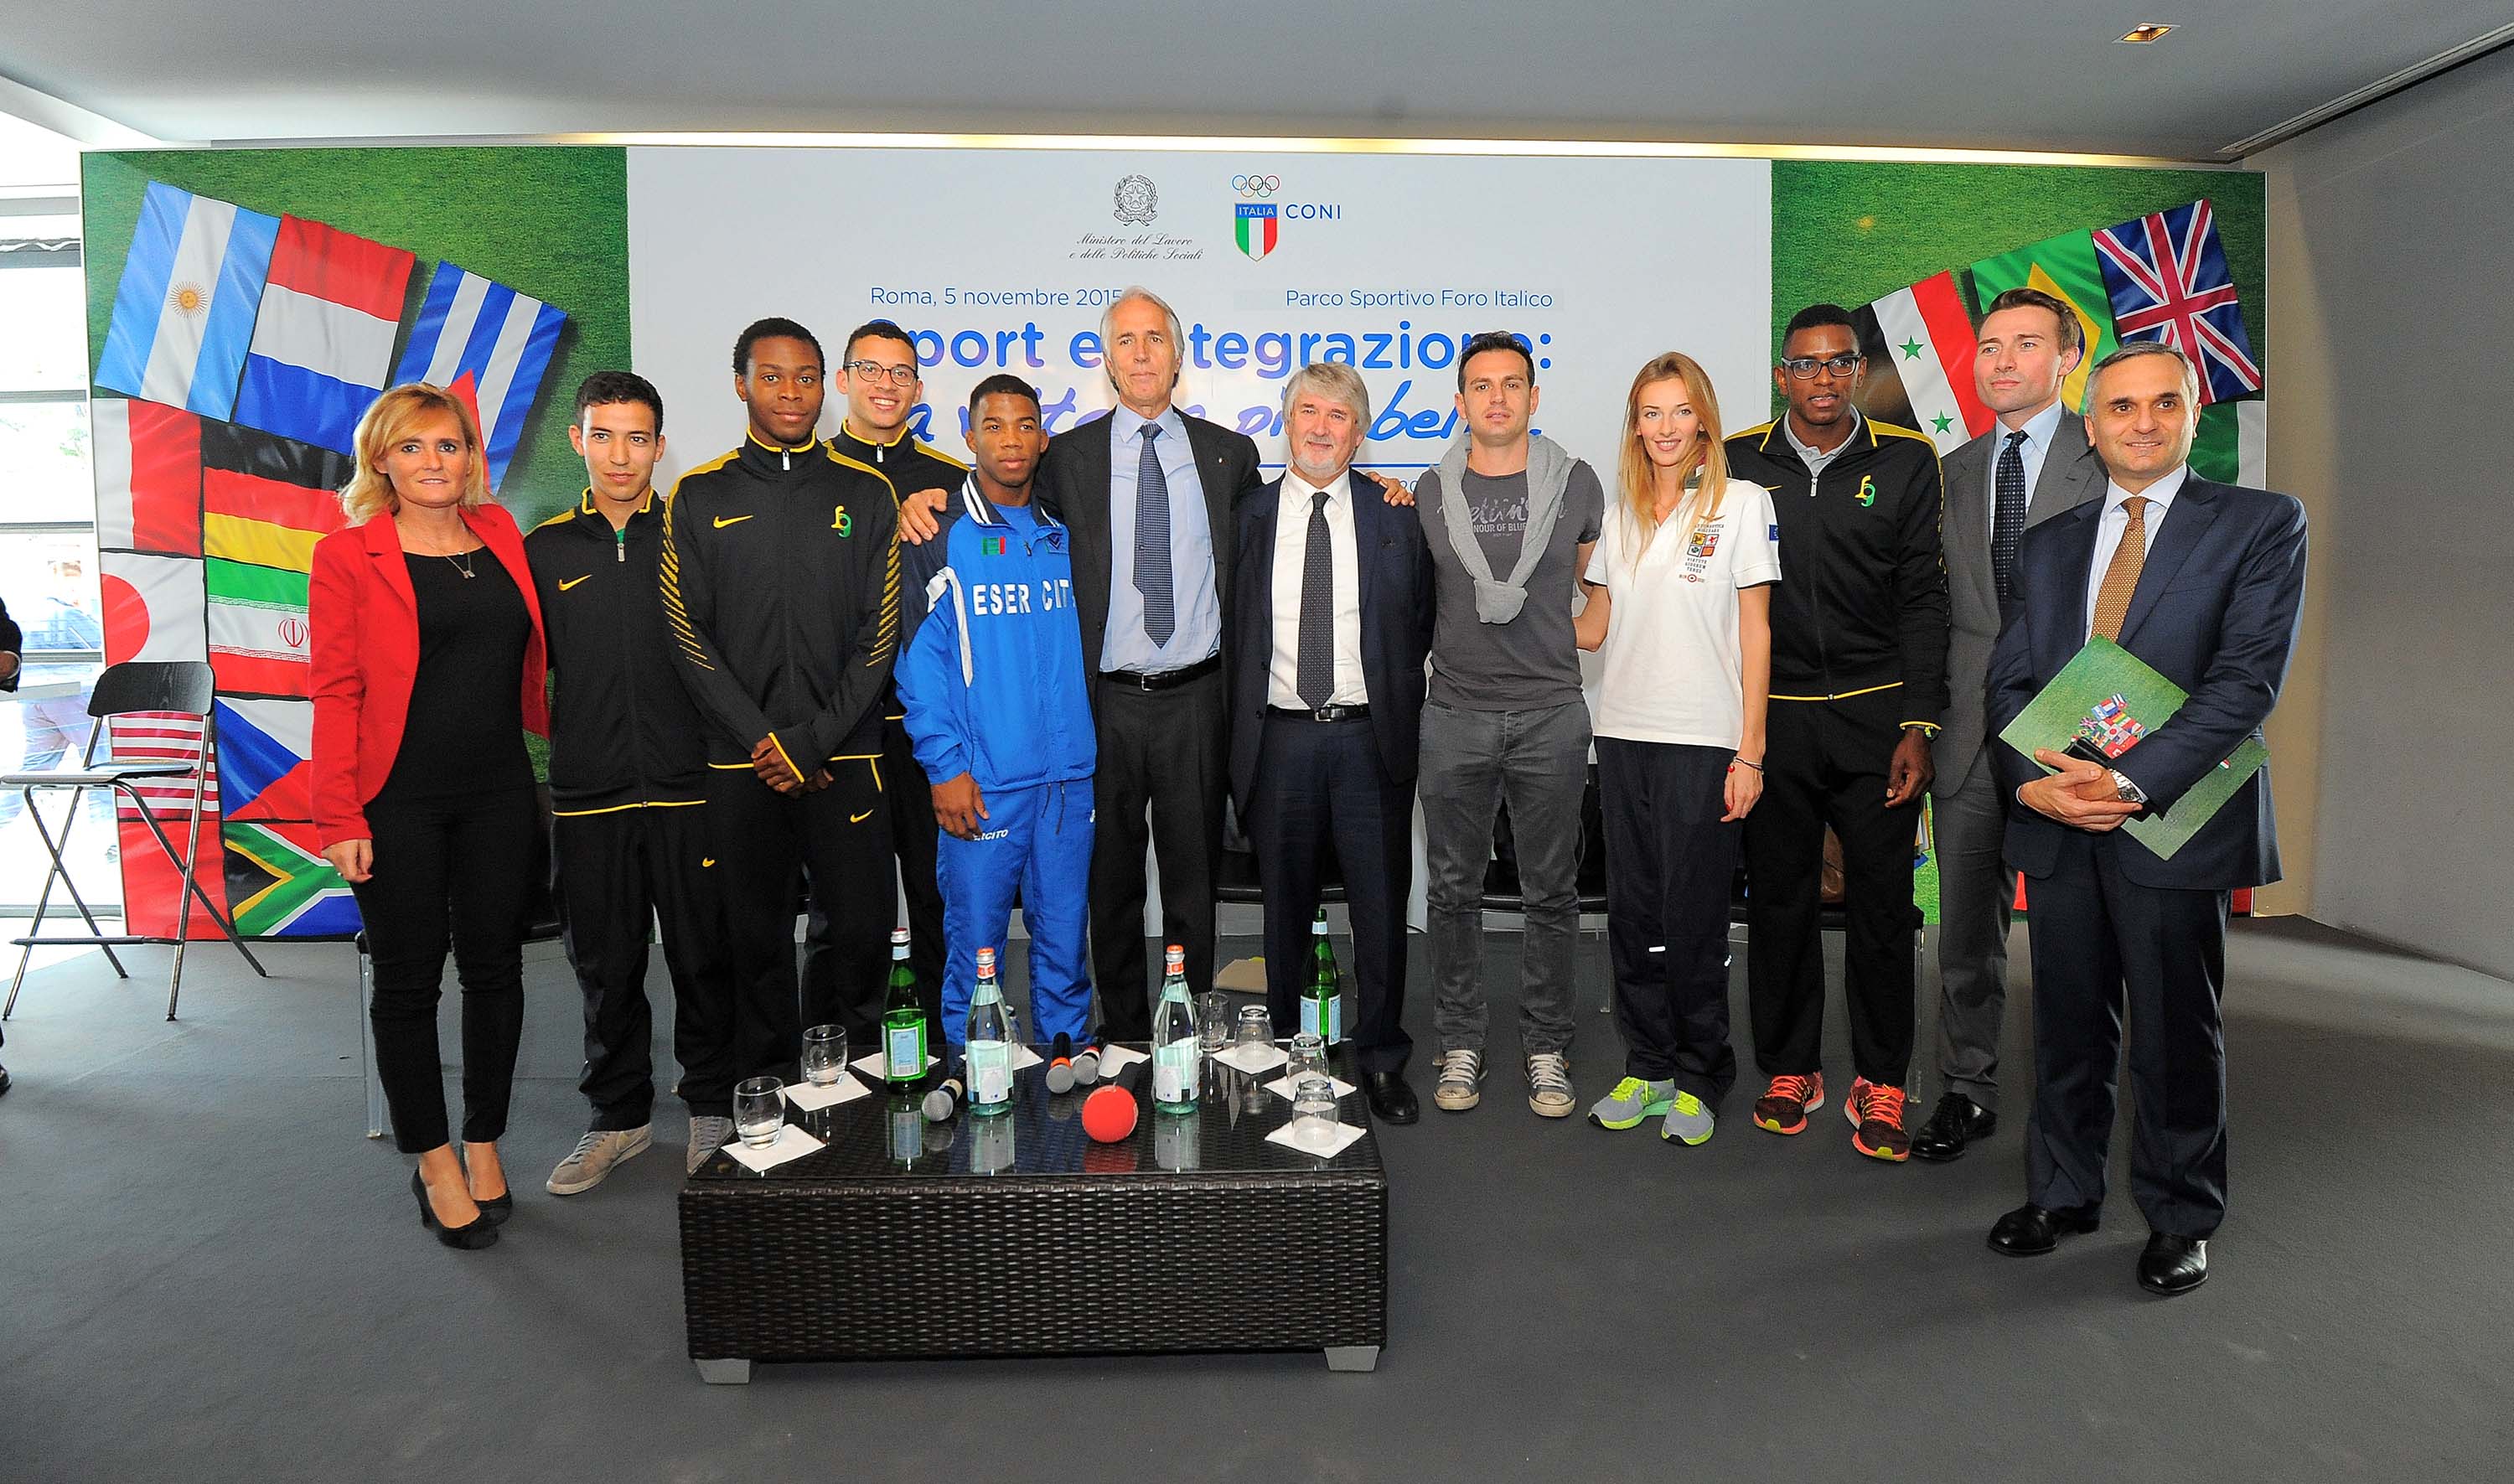 Sport e integrazione, Malagò e il ministro Poletti premiano le buone pratiche vincitrici del progetto